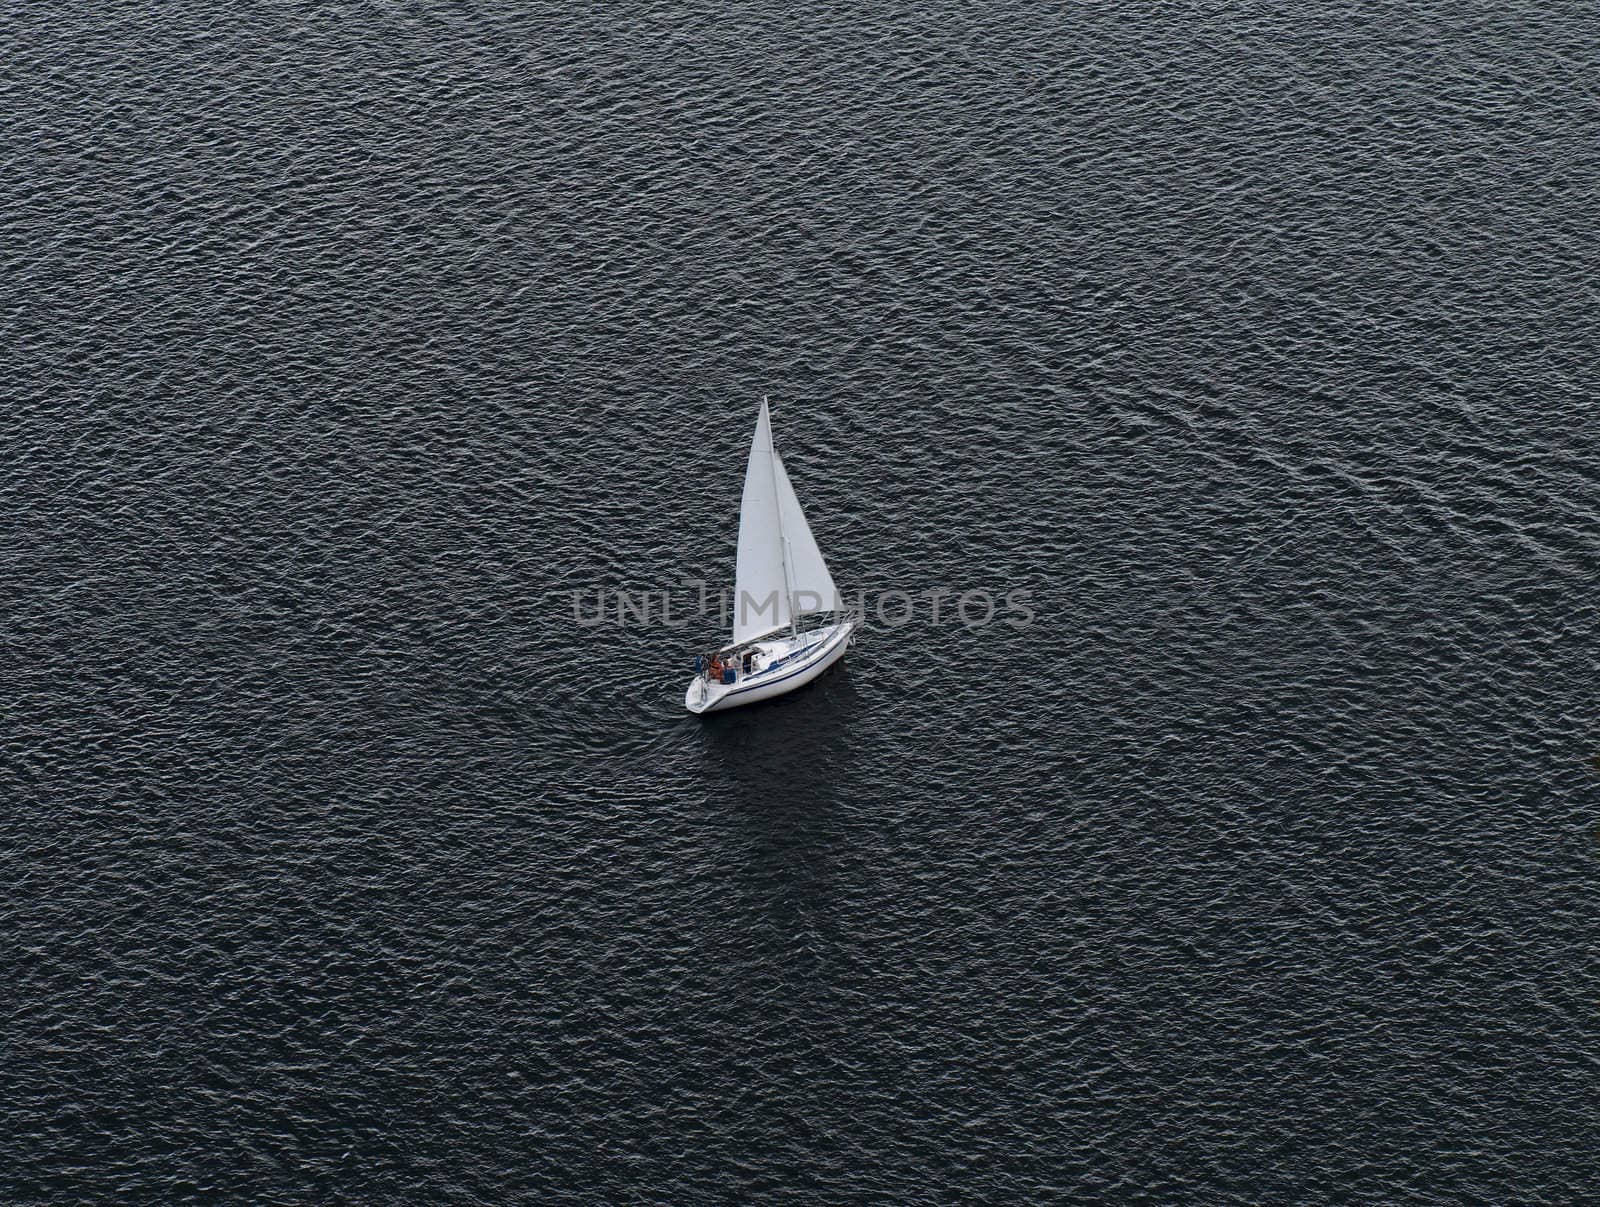 Lonely yacht by Kamensky